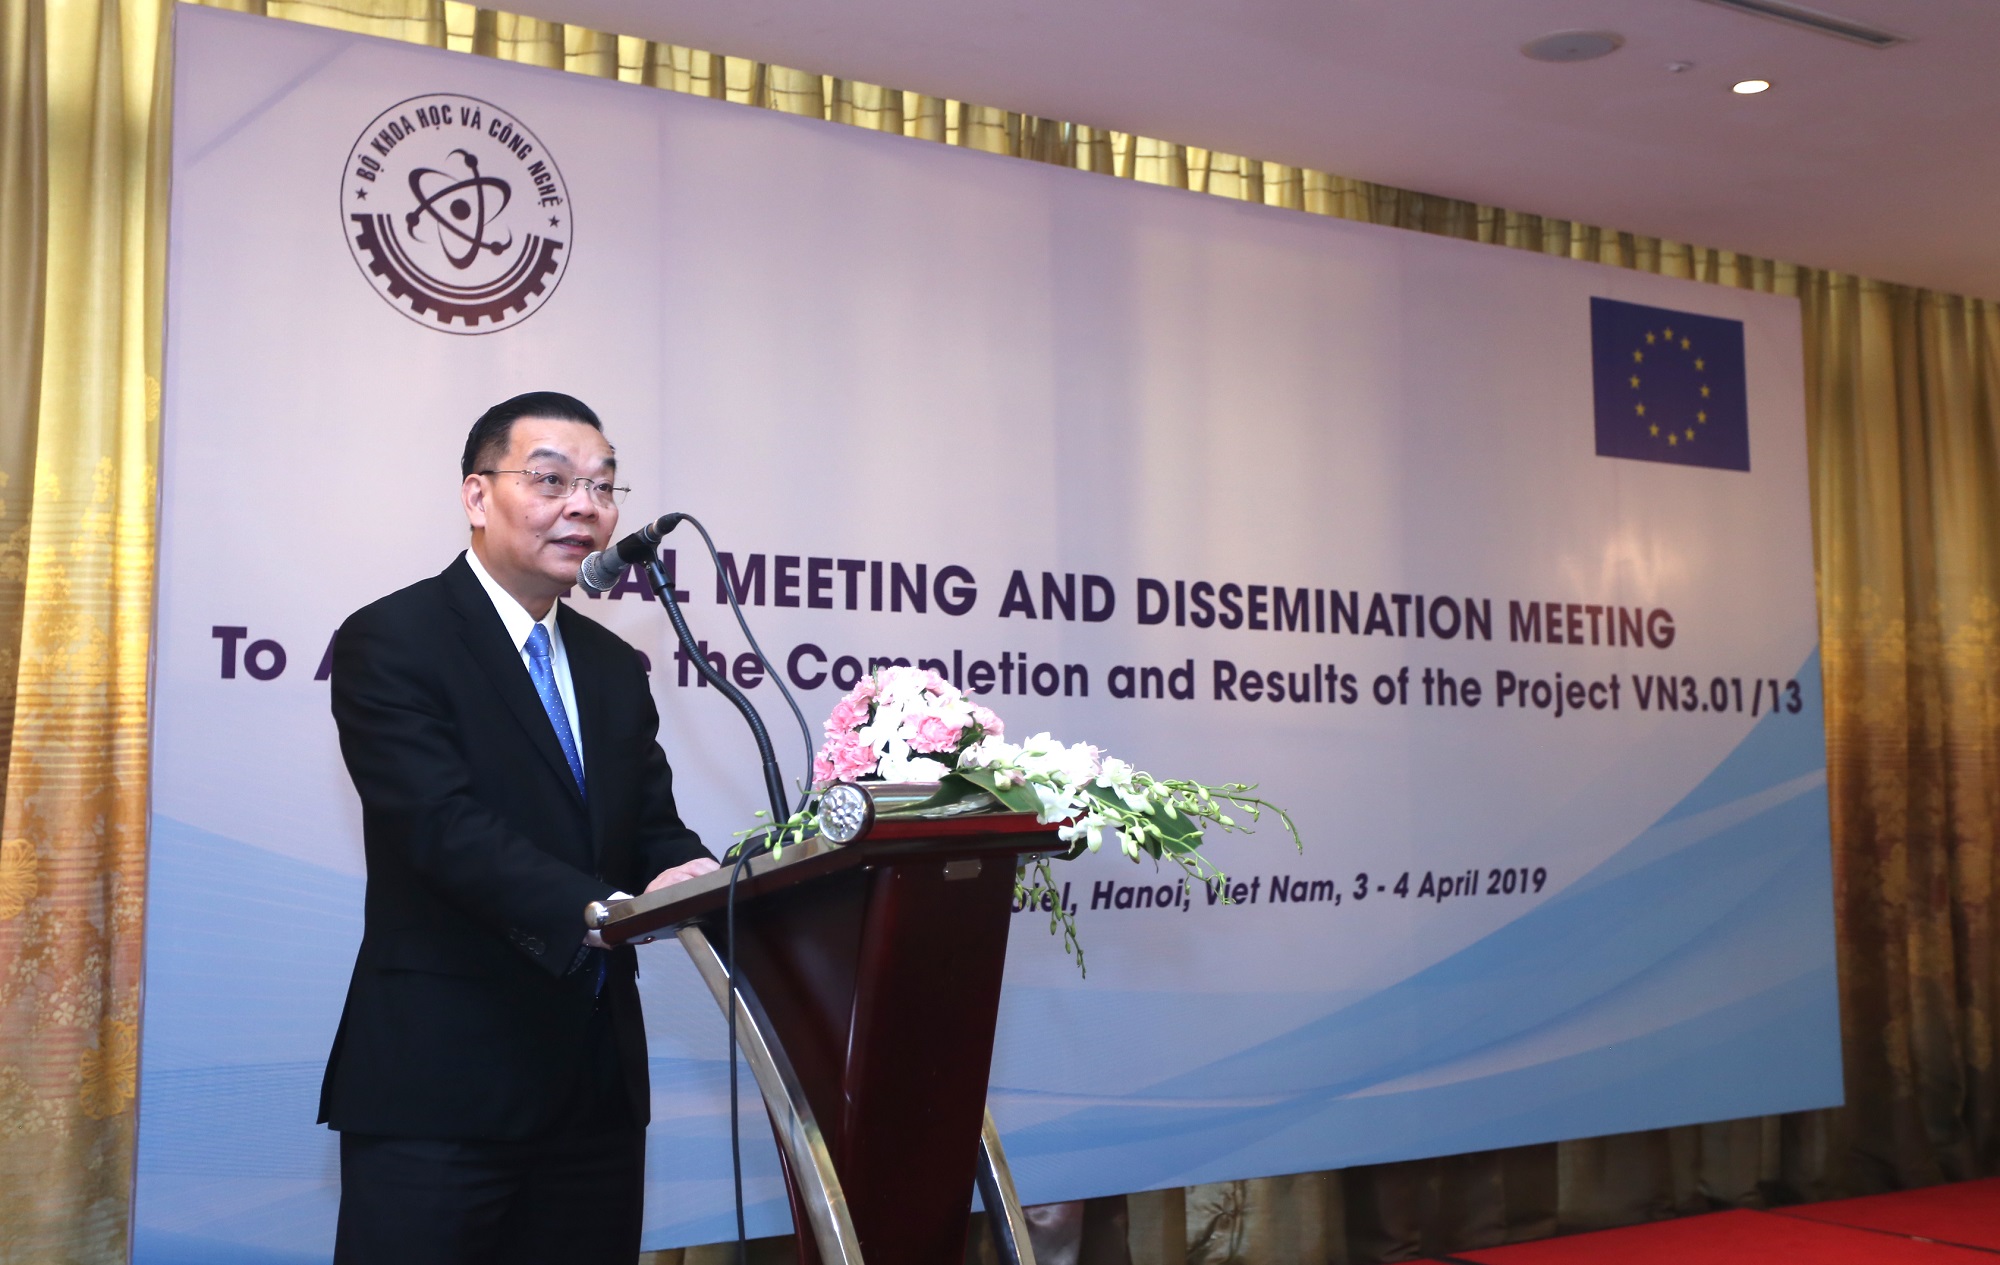 Bộ trưởng Bộ KH&CN Chu Ngọc Anh phát biểu tại hội nghị tổng kết dự án | Ảnh: Bộ KH&CN